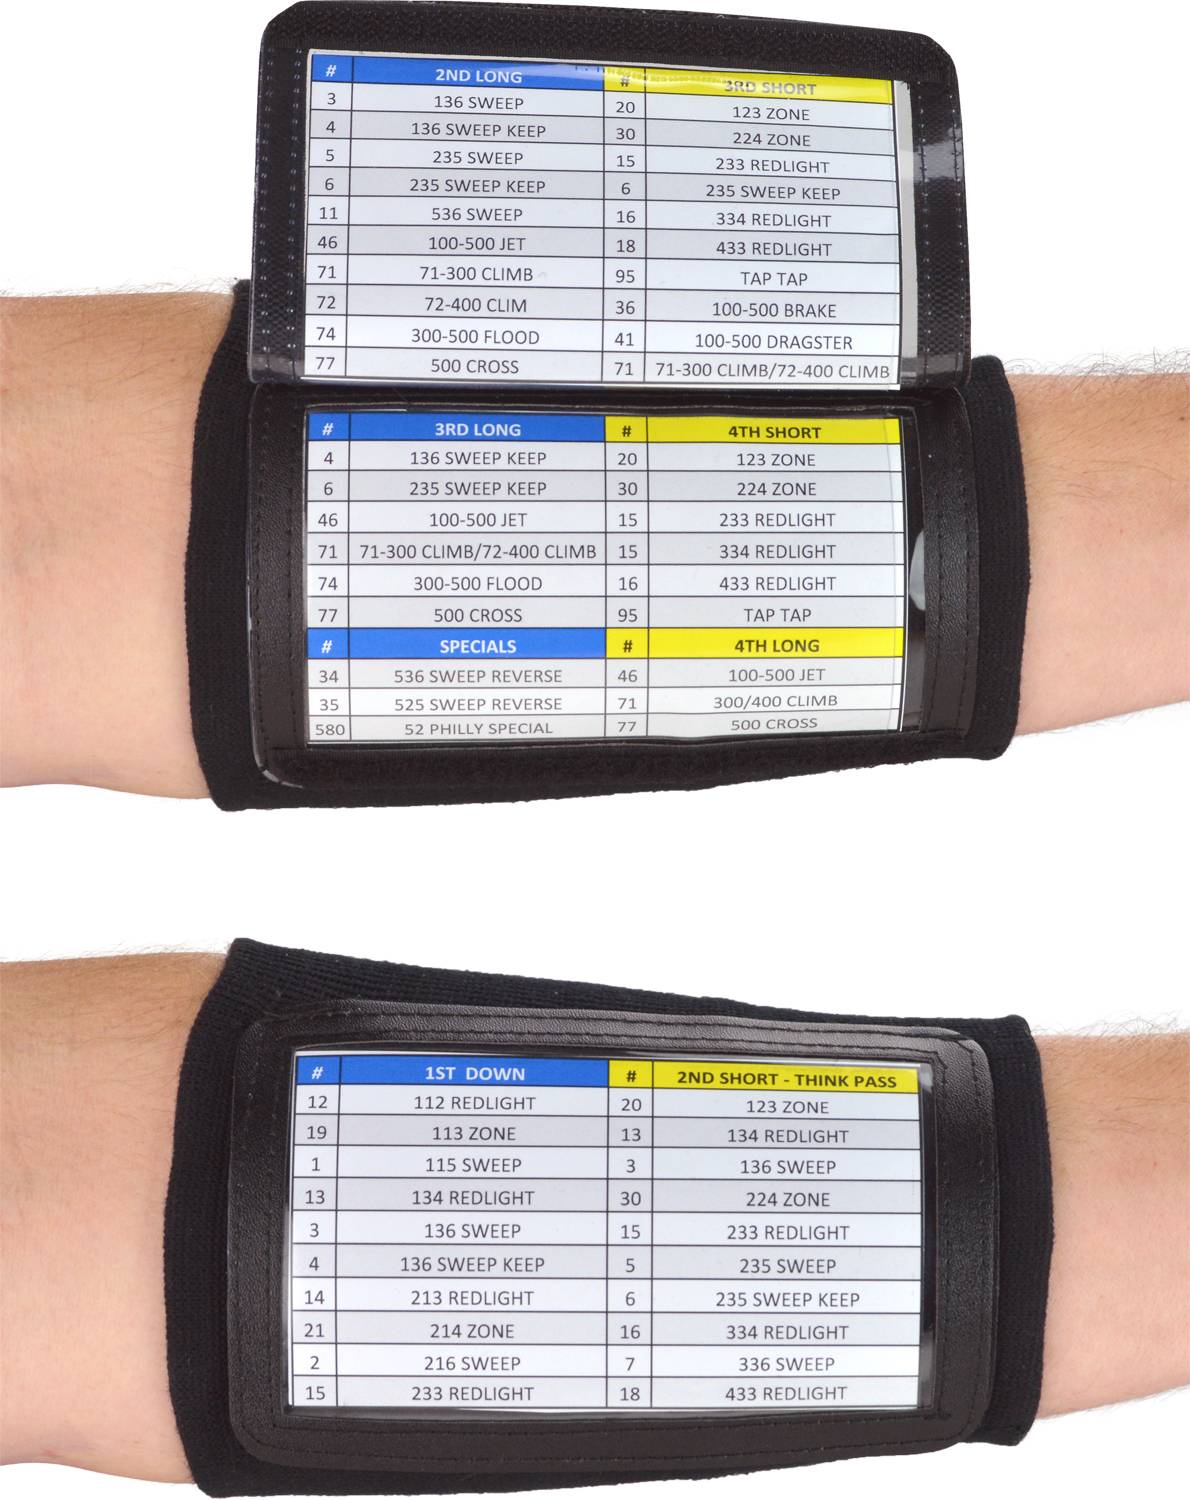 Printable Softball Wristband Examples Customize and Print